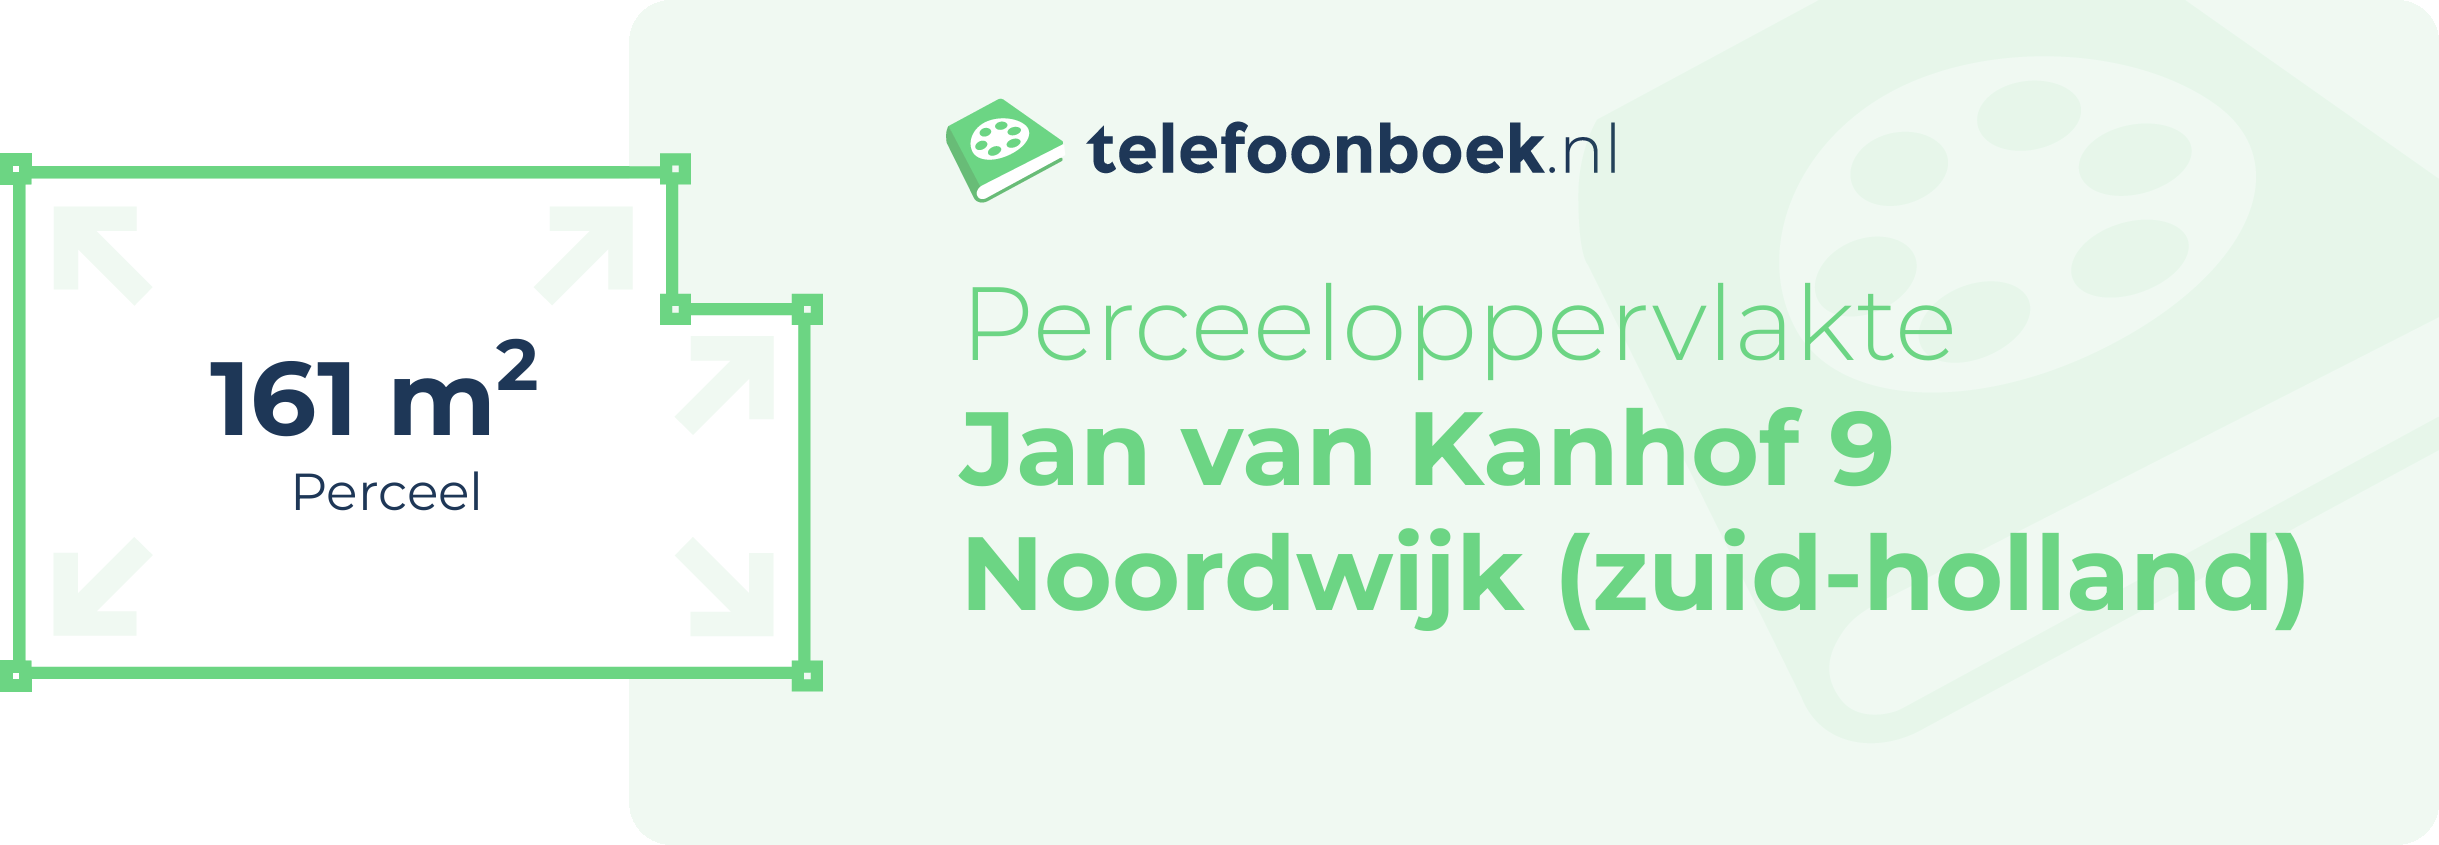 Perceeloppervlakte Jan Van Kanhof 9 Noordwijk (Zuid-Holland)